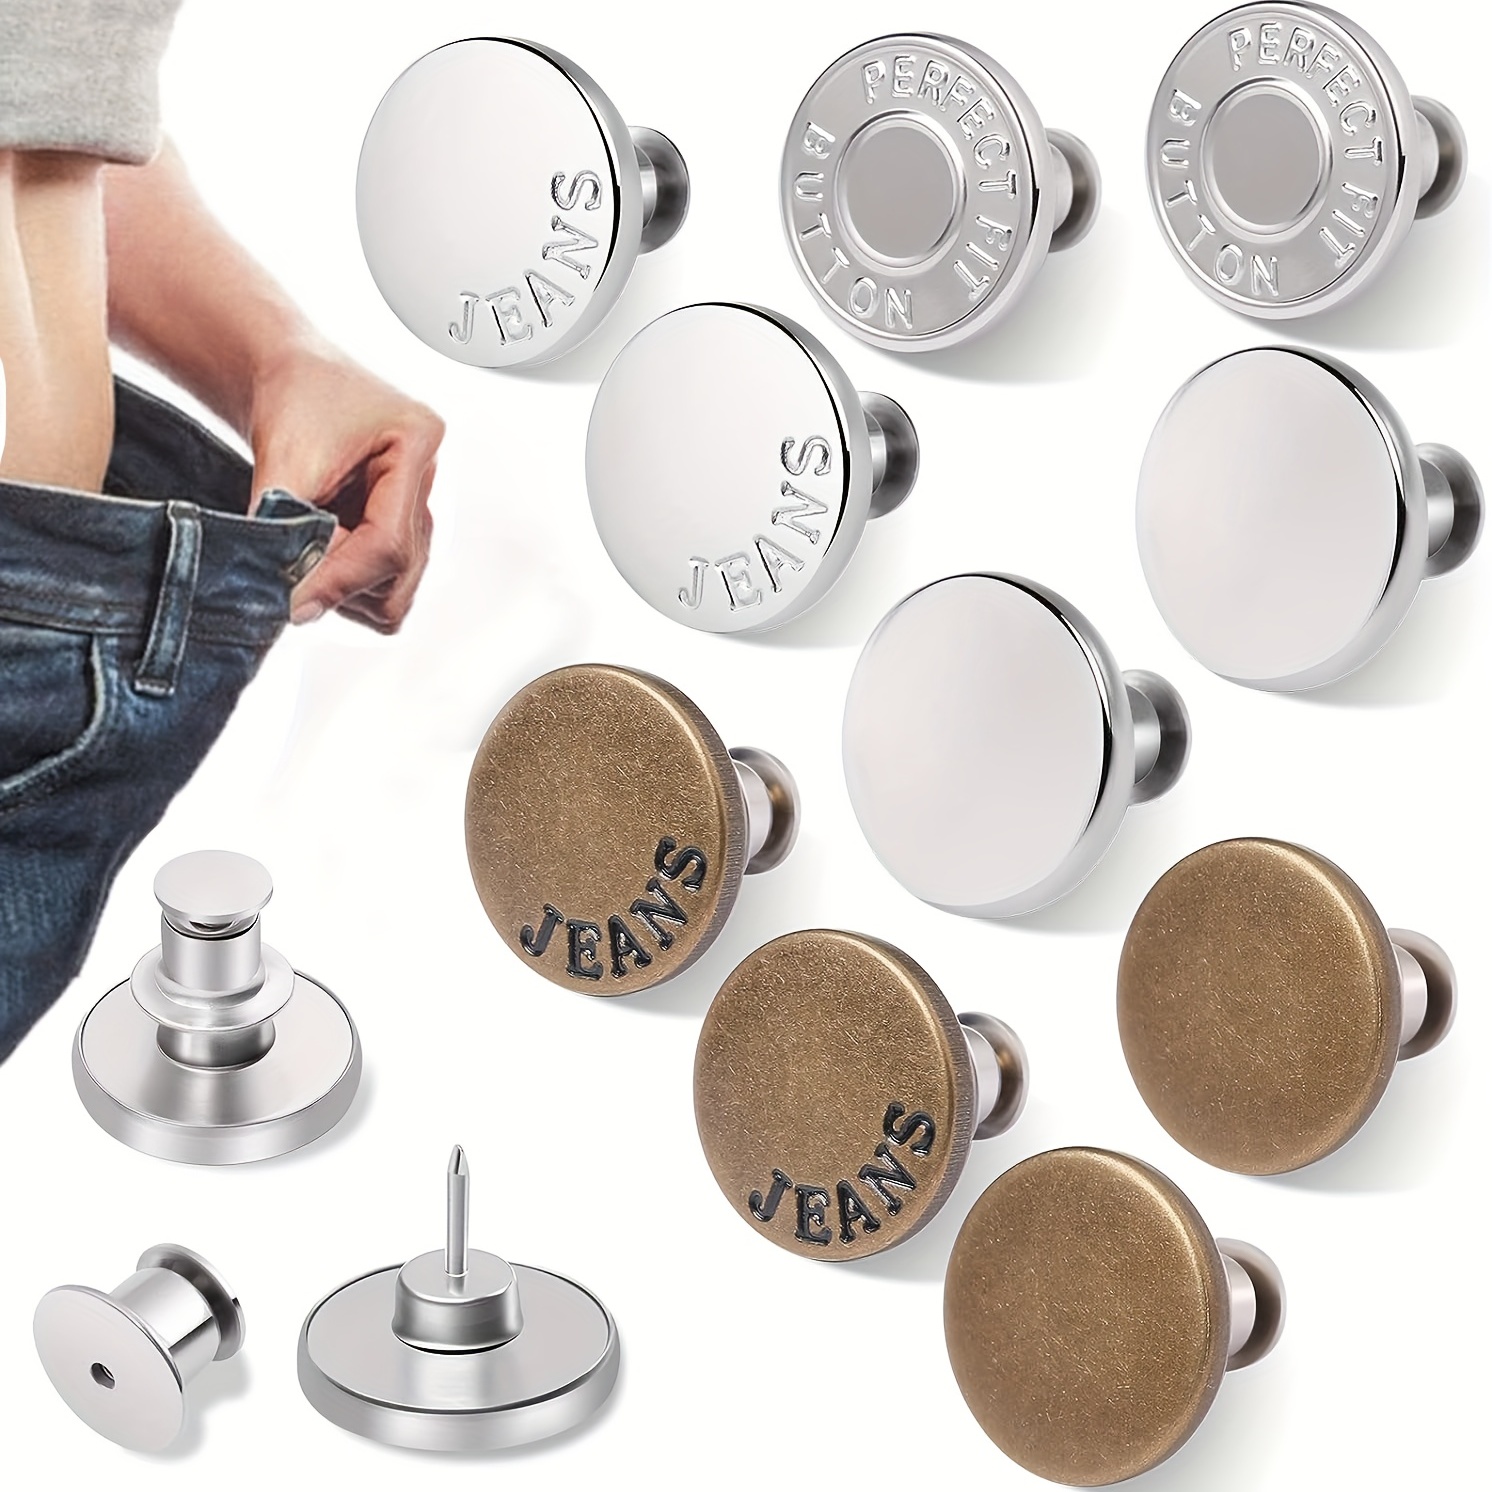  8 juegos de botones para pantalones vaqueros, botones de Jean, botones  de 3 estilos, botones de repuesto para jean, botones de metal, sin coser  para pantalones vaqueros, botones ajustables para pantalones